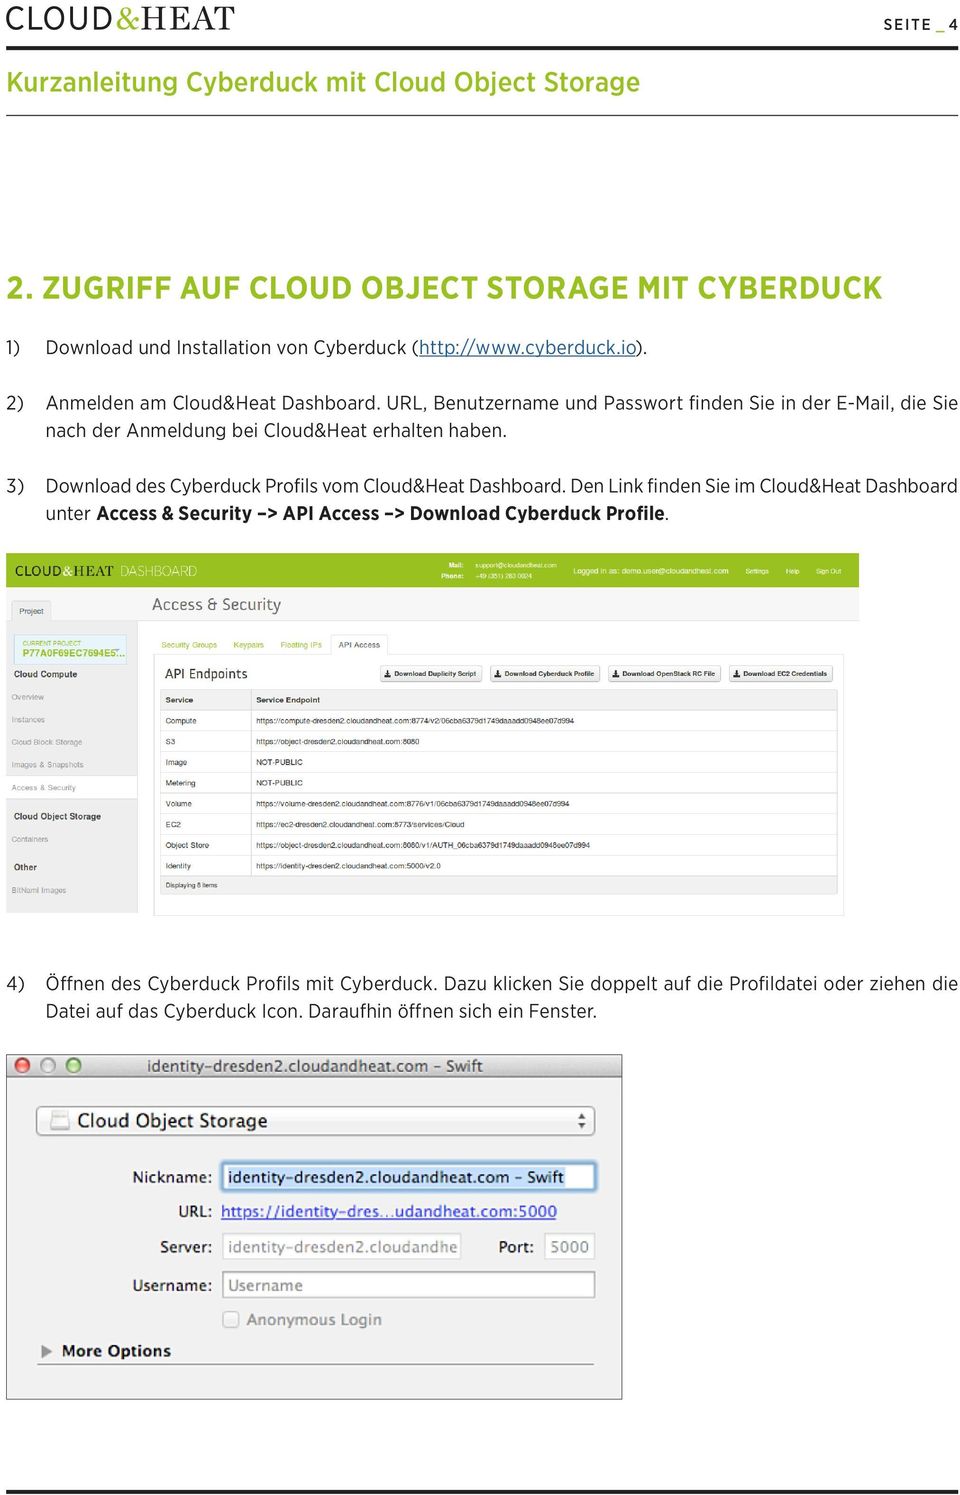 3) Download des Cyberduck Profils vom Cloud&Heat Dashboard.